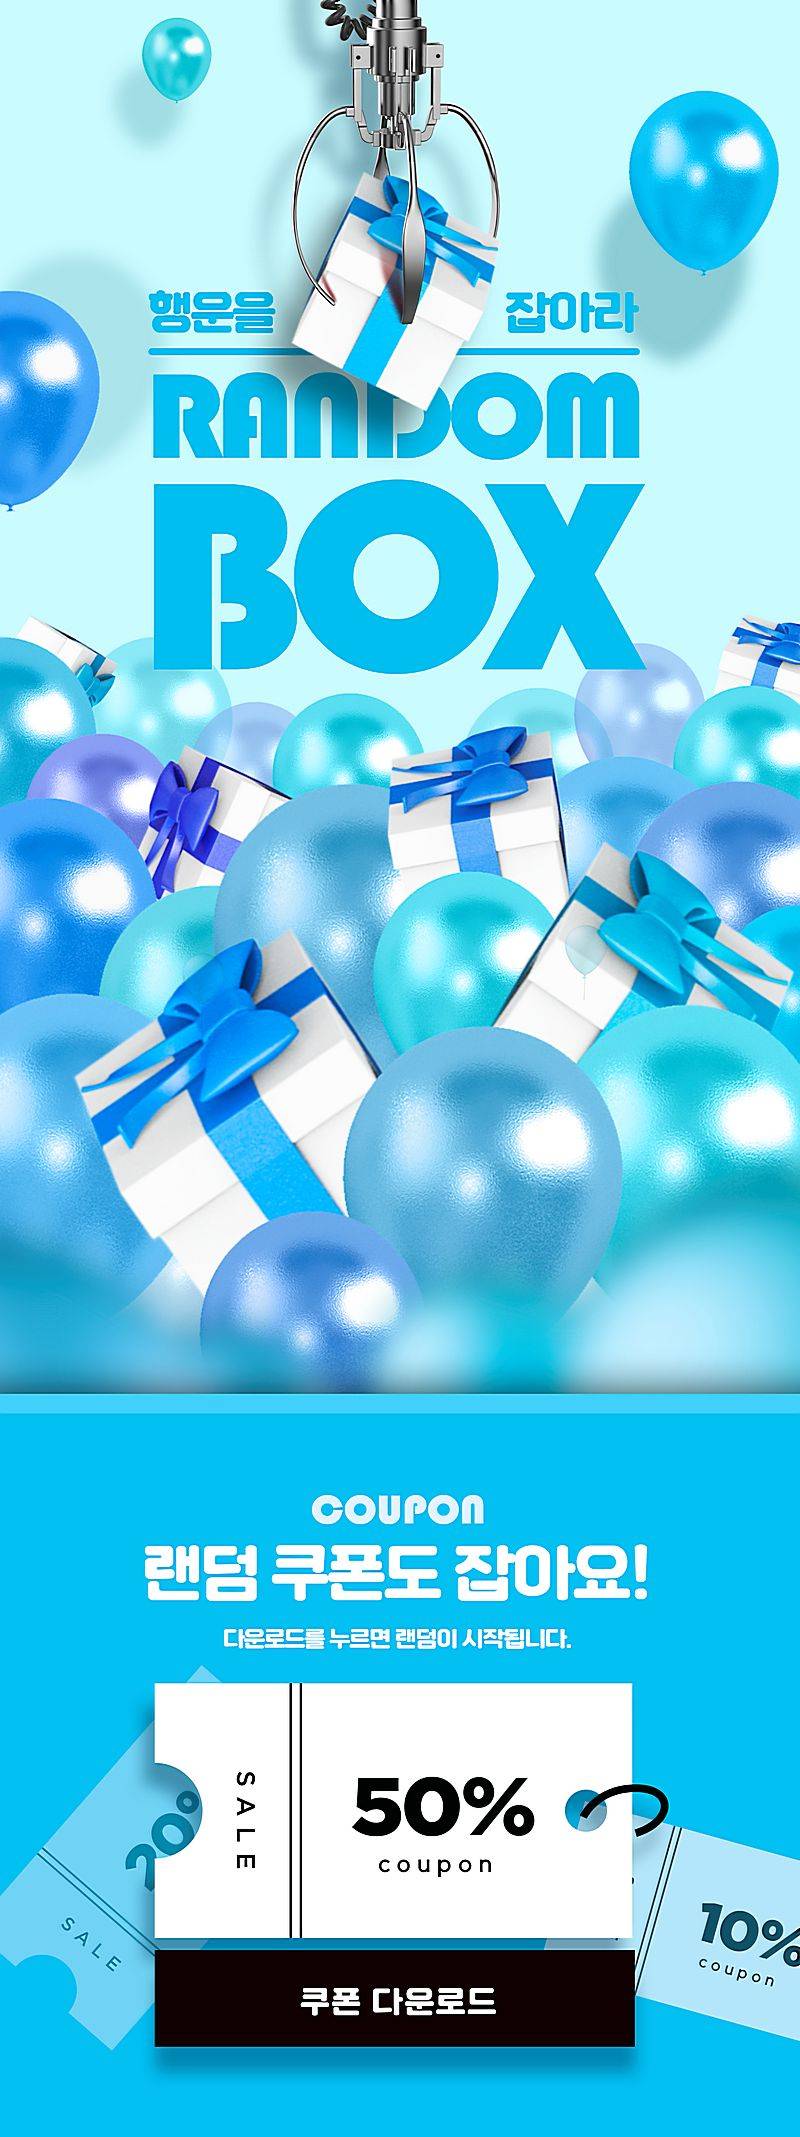 蓝色礼物盒气球幸运礼盒抽奖中奖券折扣券海报设计